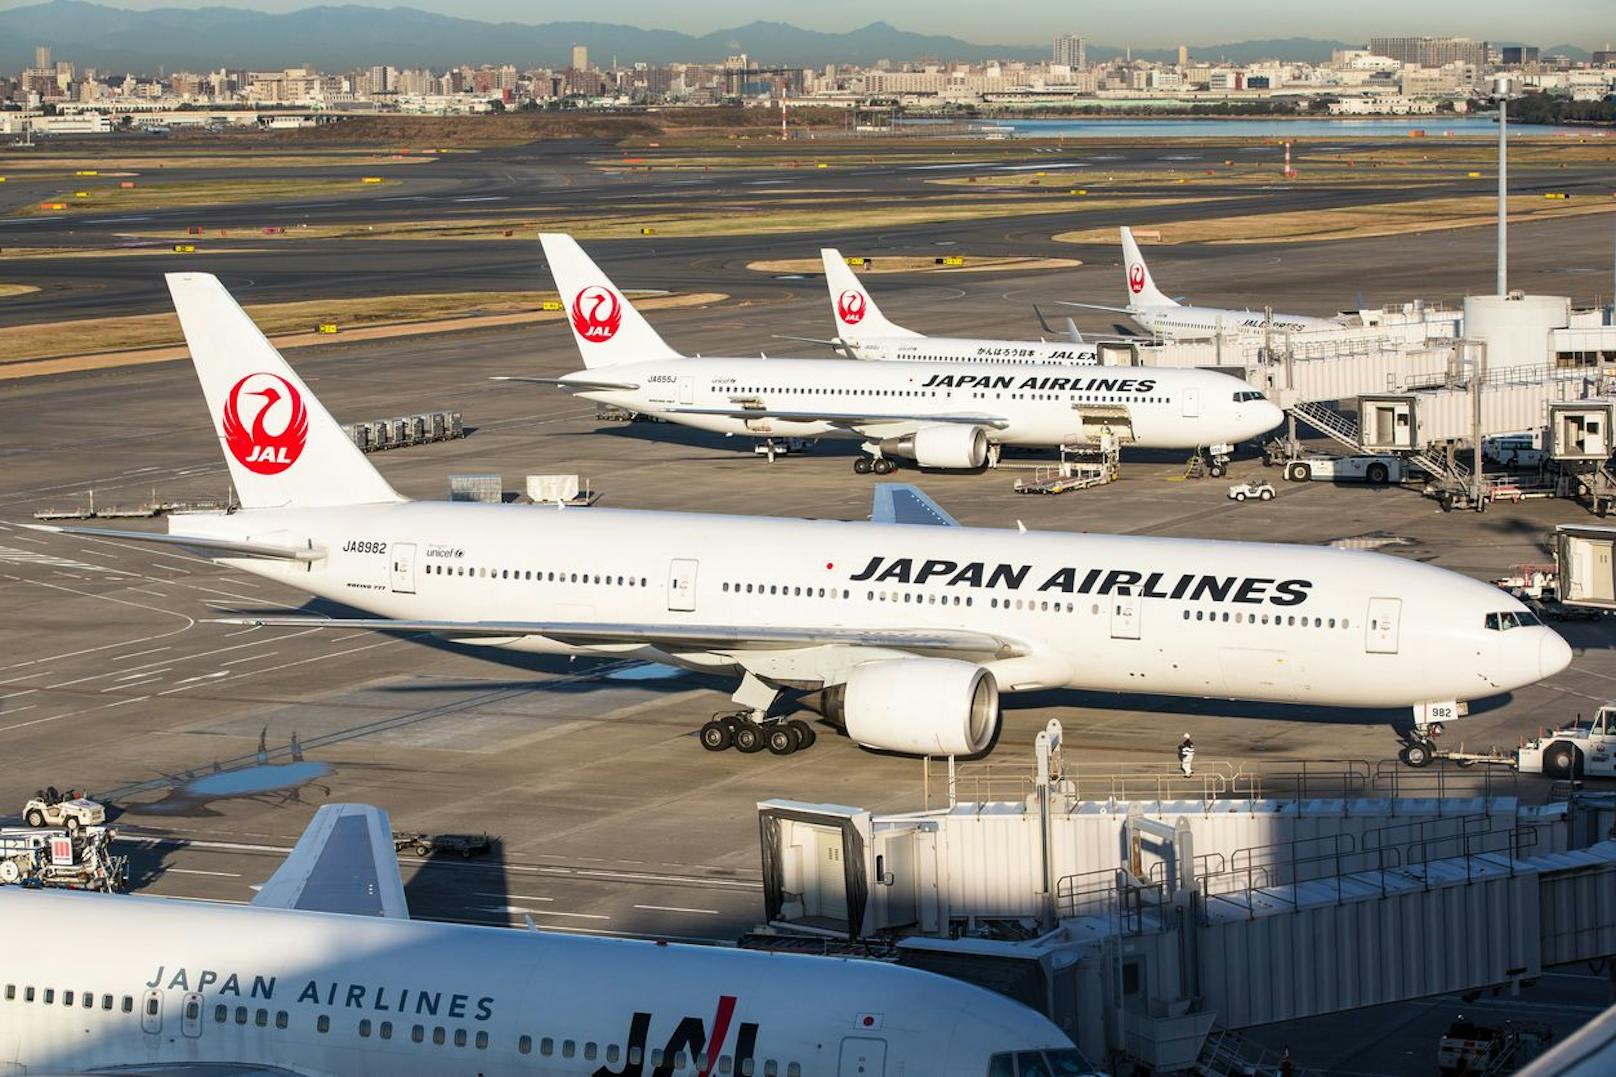 Trotz der ehrenwerten Absichten der Aktion von Japan Airlines, gibt es Gründe, dem Plan skeptisch gegenüberzustehen.